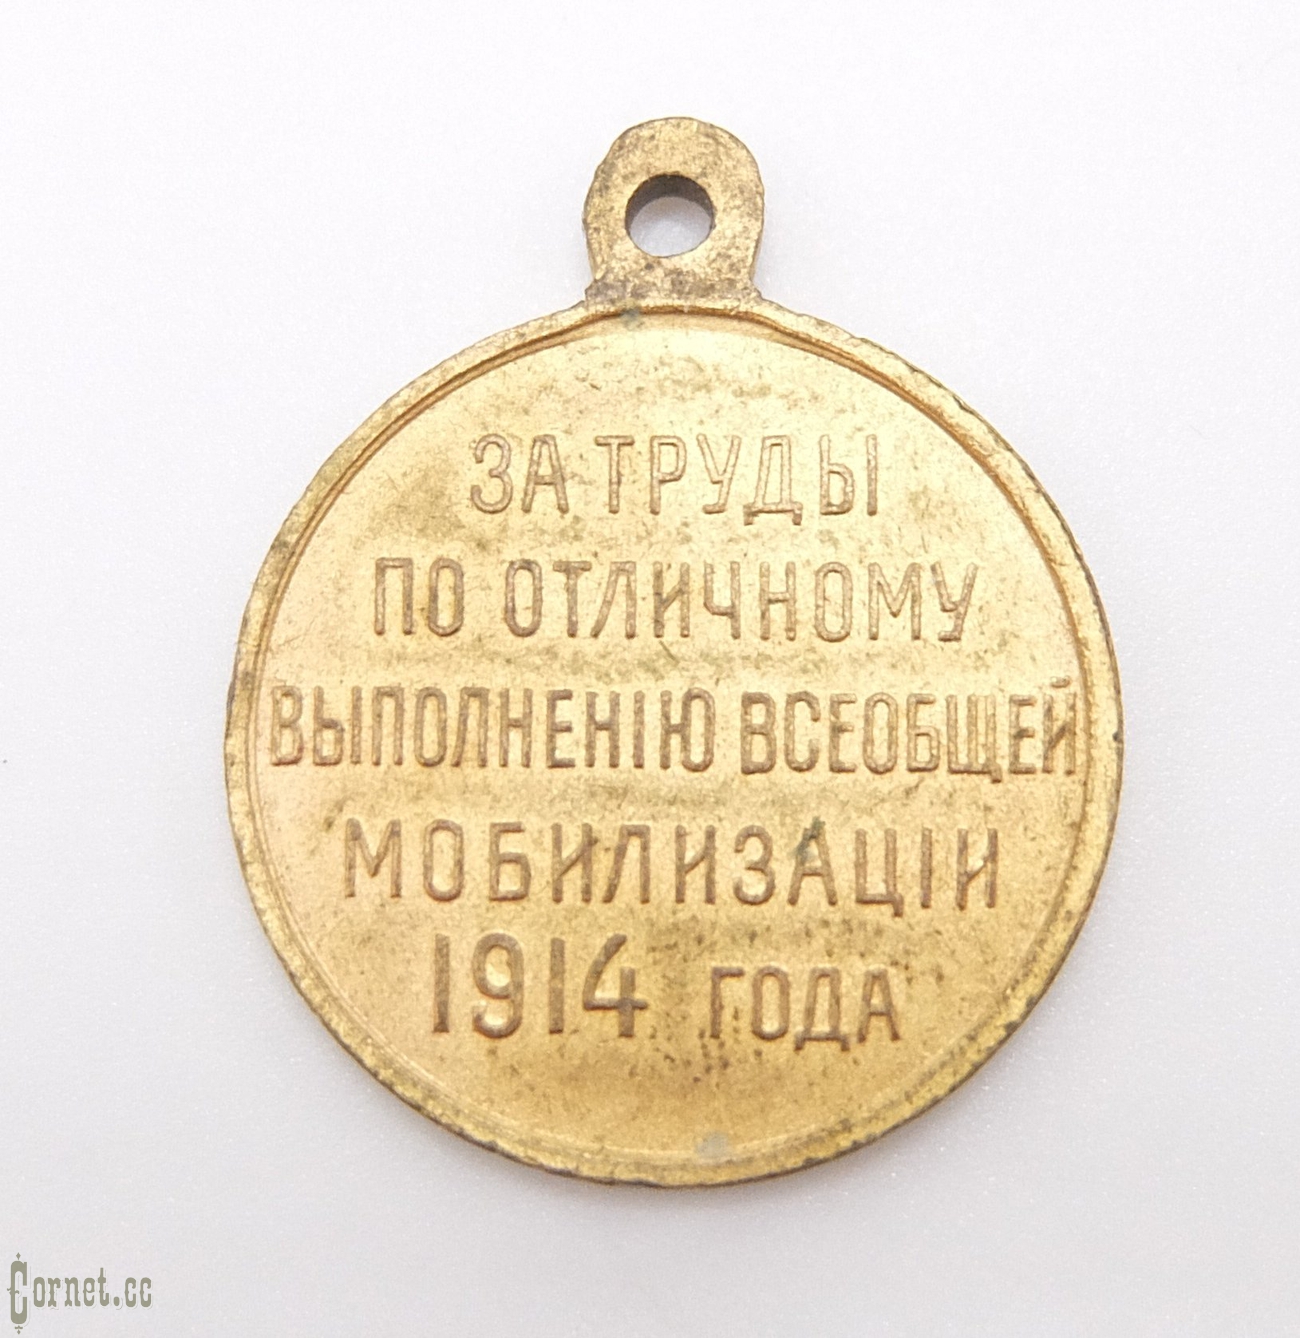 Медаль За труды по отличному выполнению всеобщей мобилизации 1914 года